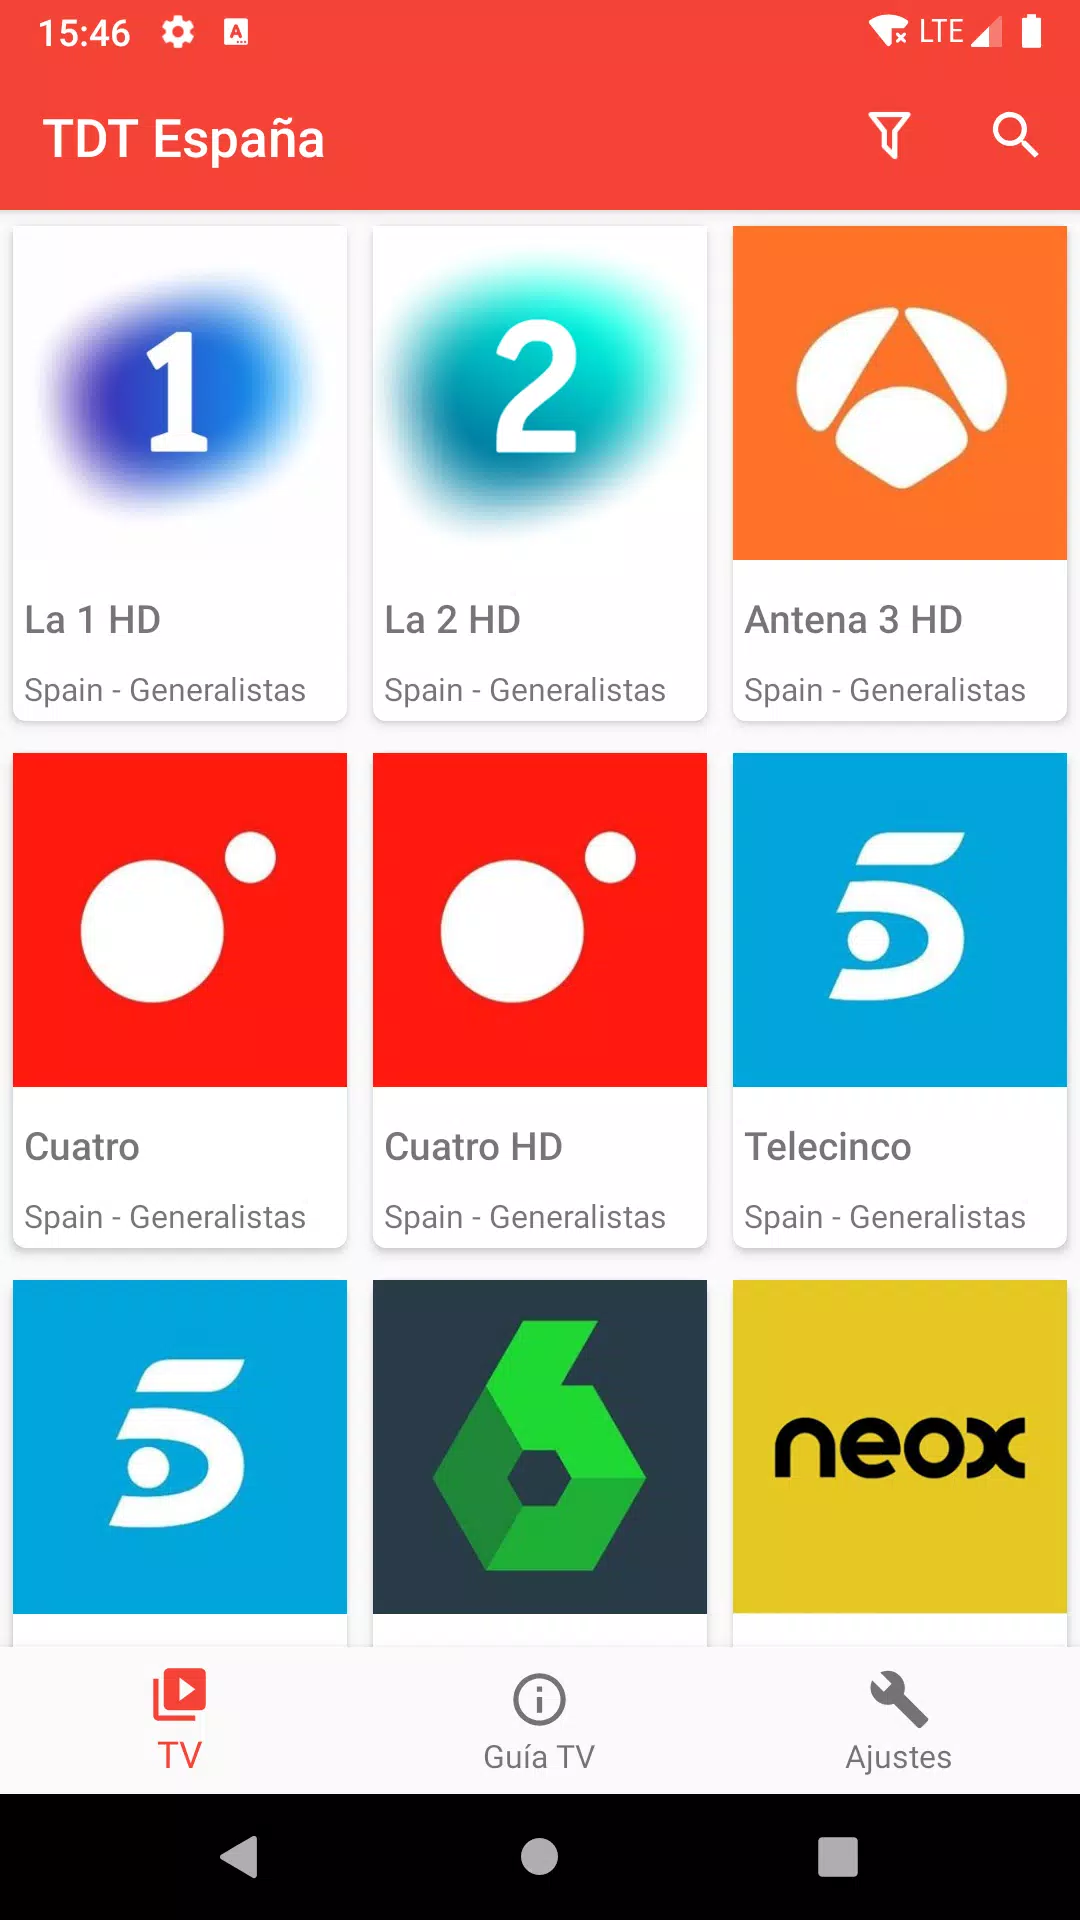 TDT España TV Pública APK pour Android Télécharger